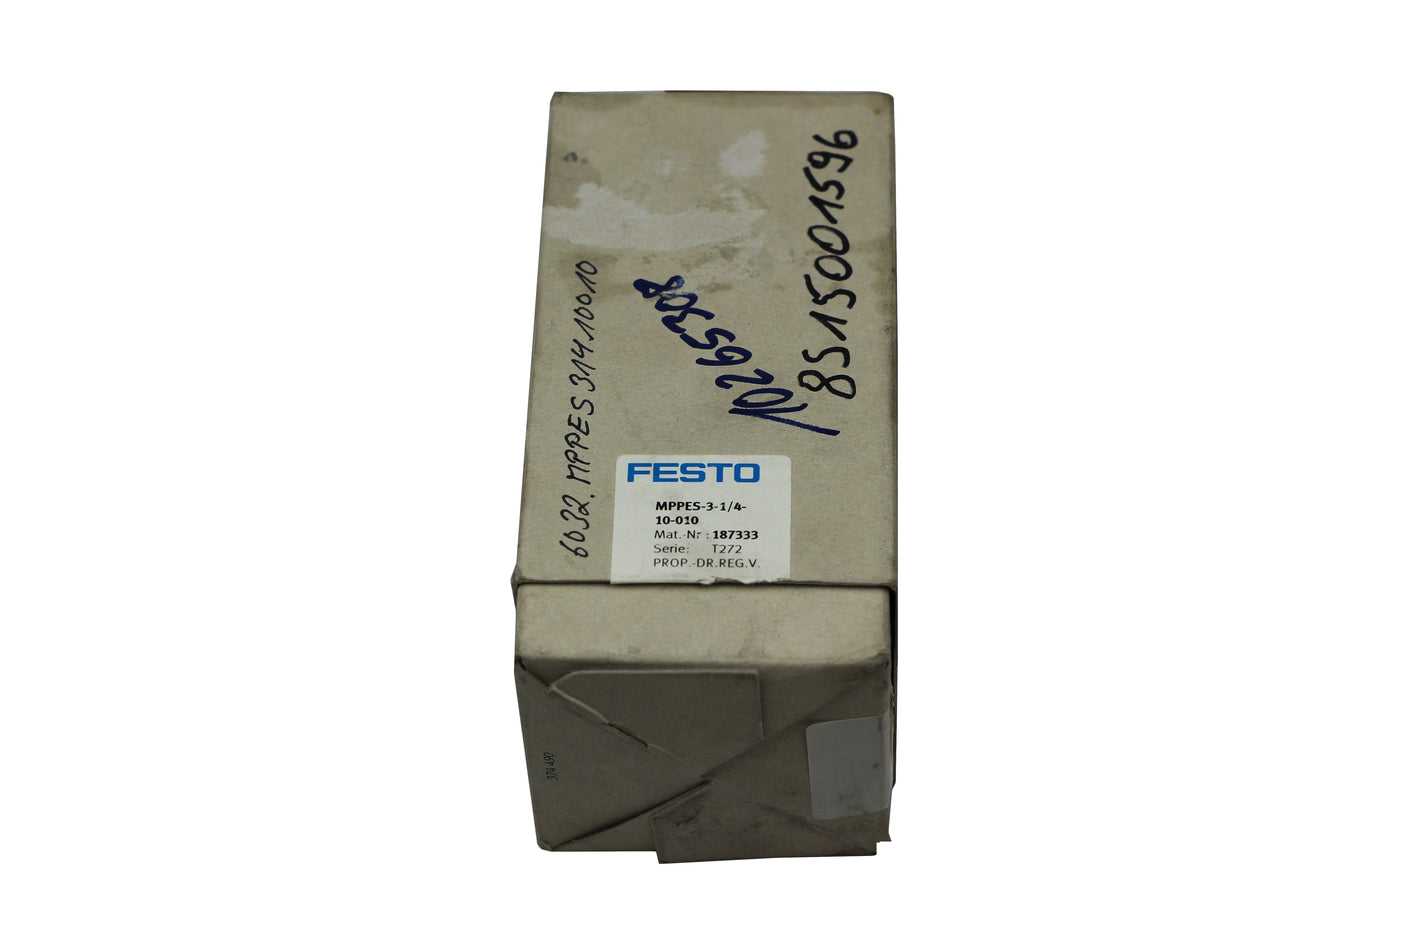 Festo MPPES-3-1/4-10-010 187333 T272 Druckregelventil